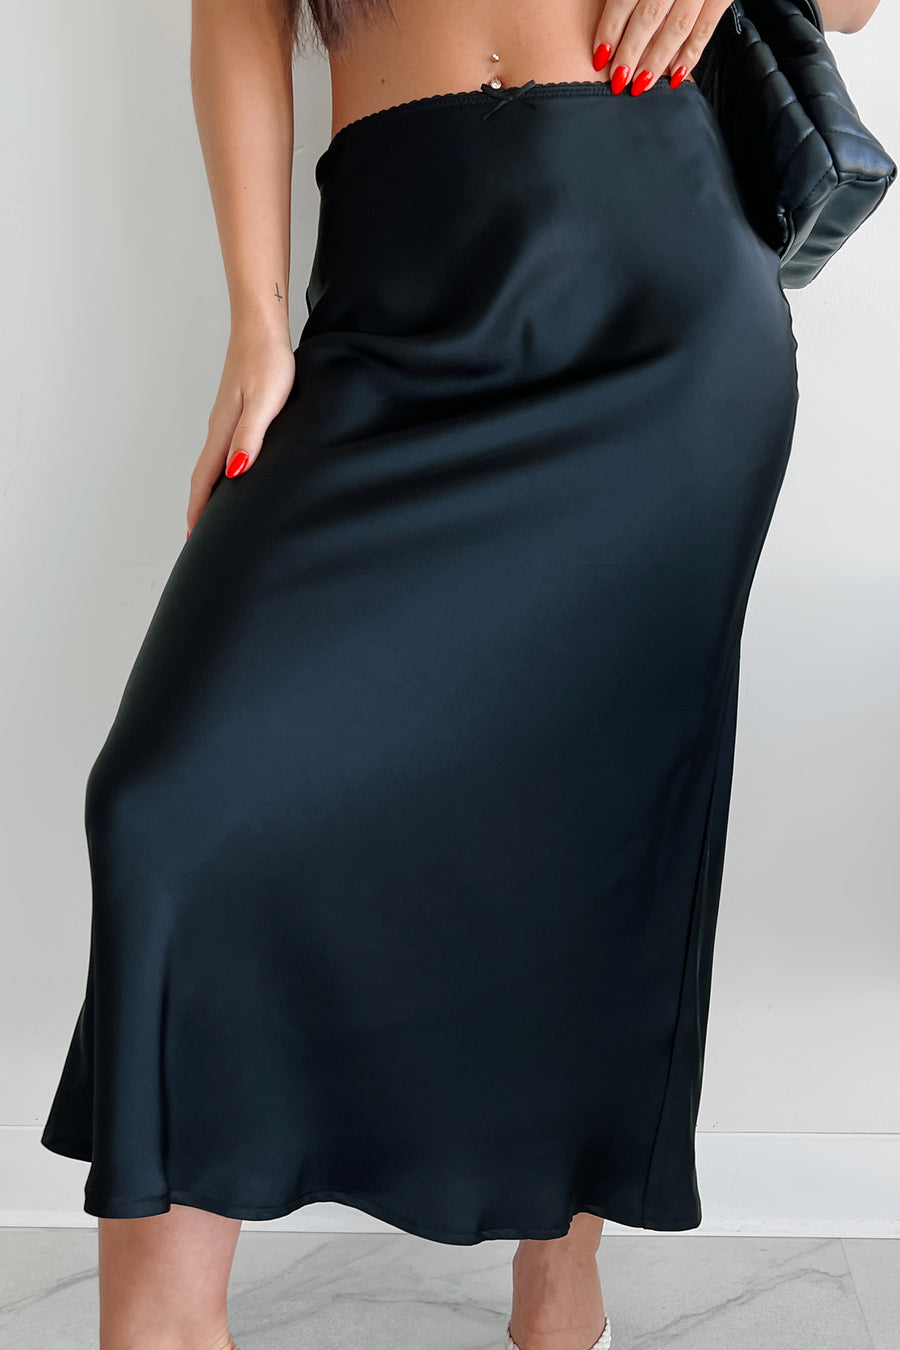 Chic Endeavors Satin Midi Skirt (Black)